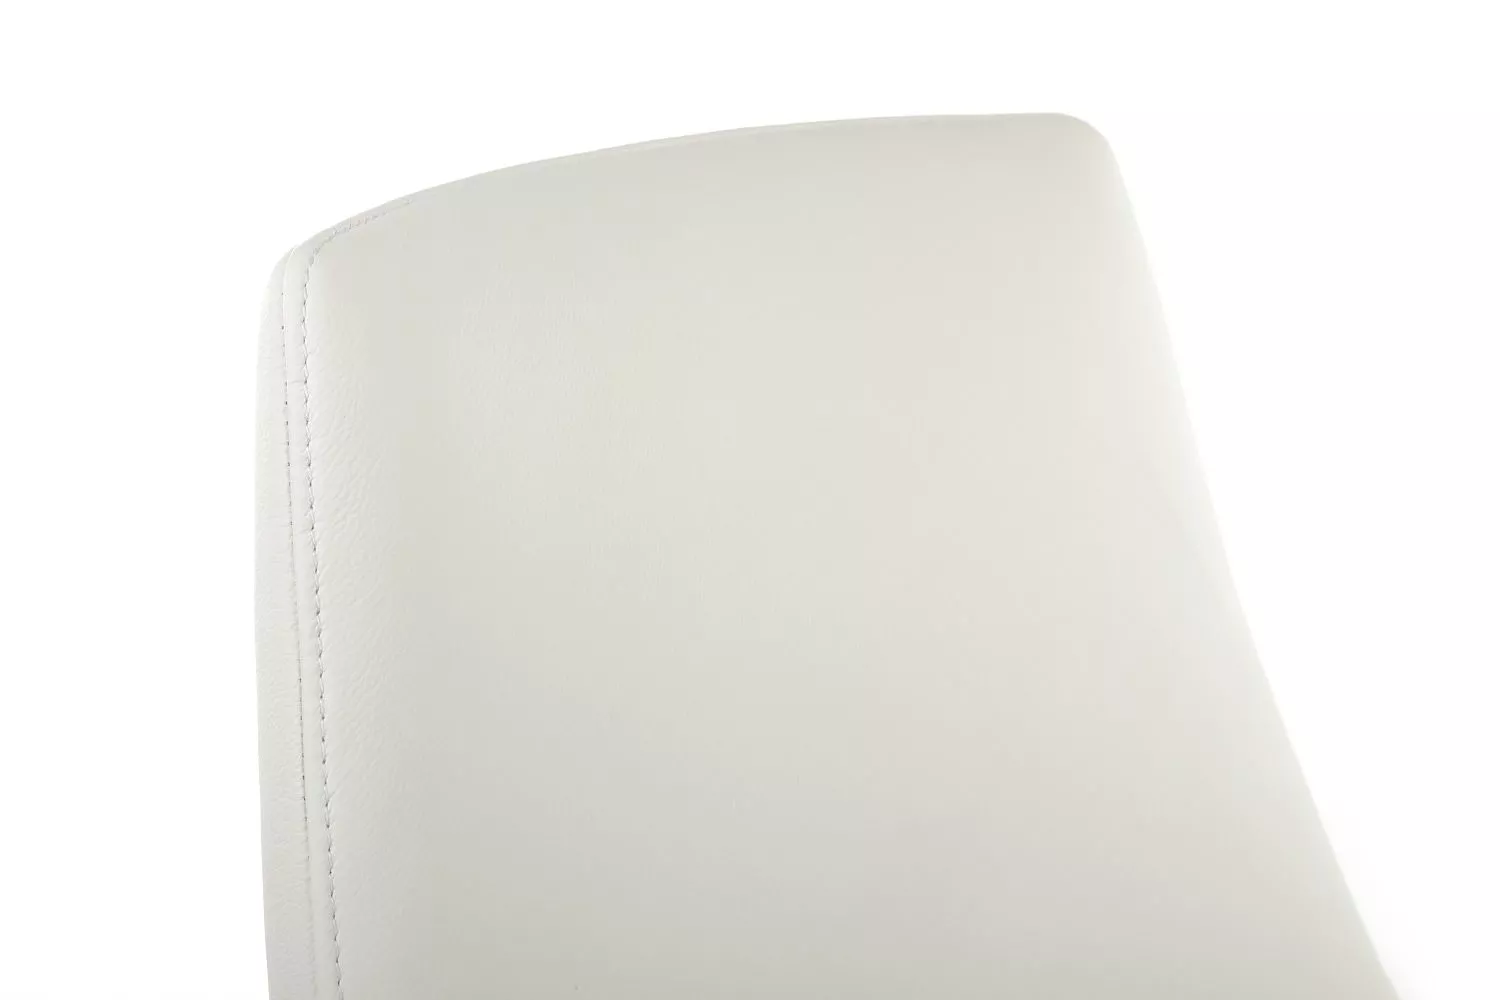 Кресло RIVA DESIGN Spell-ST (С1719) белый